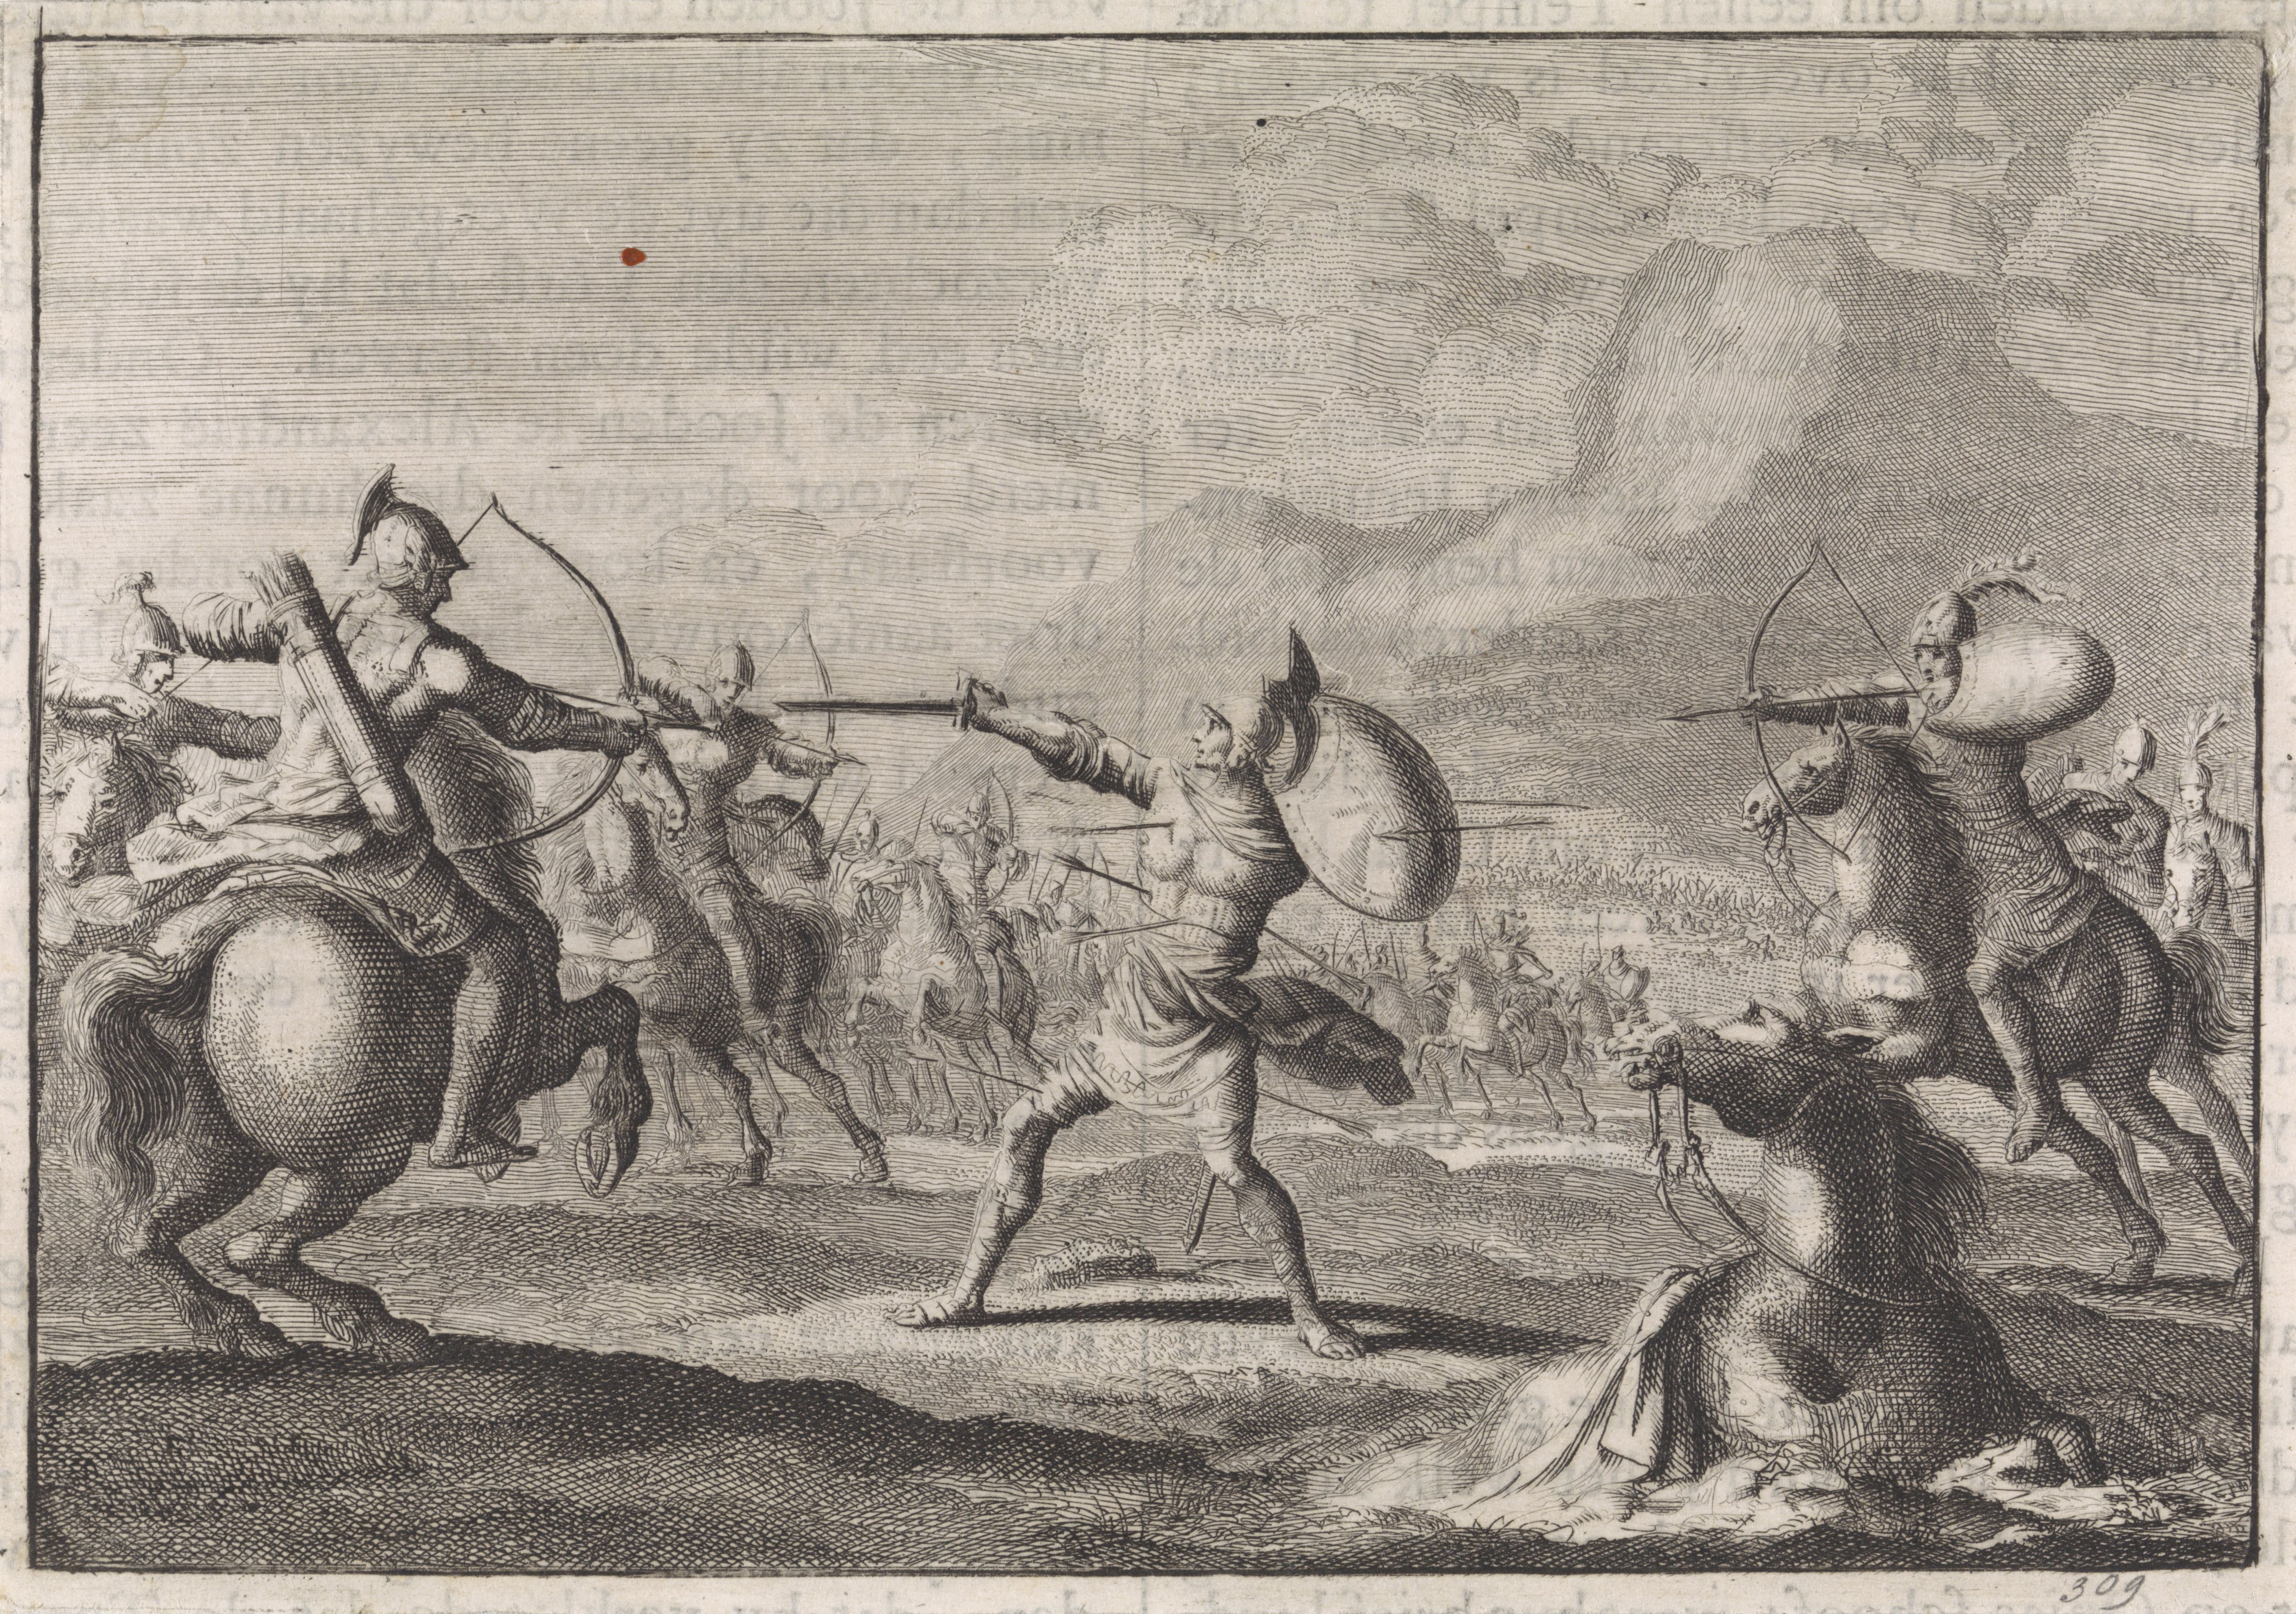 a scene of mass combat in antiquity